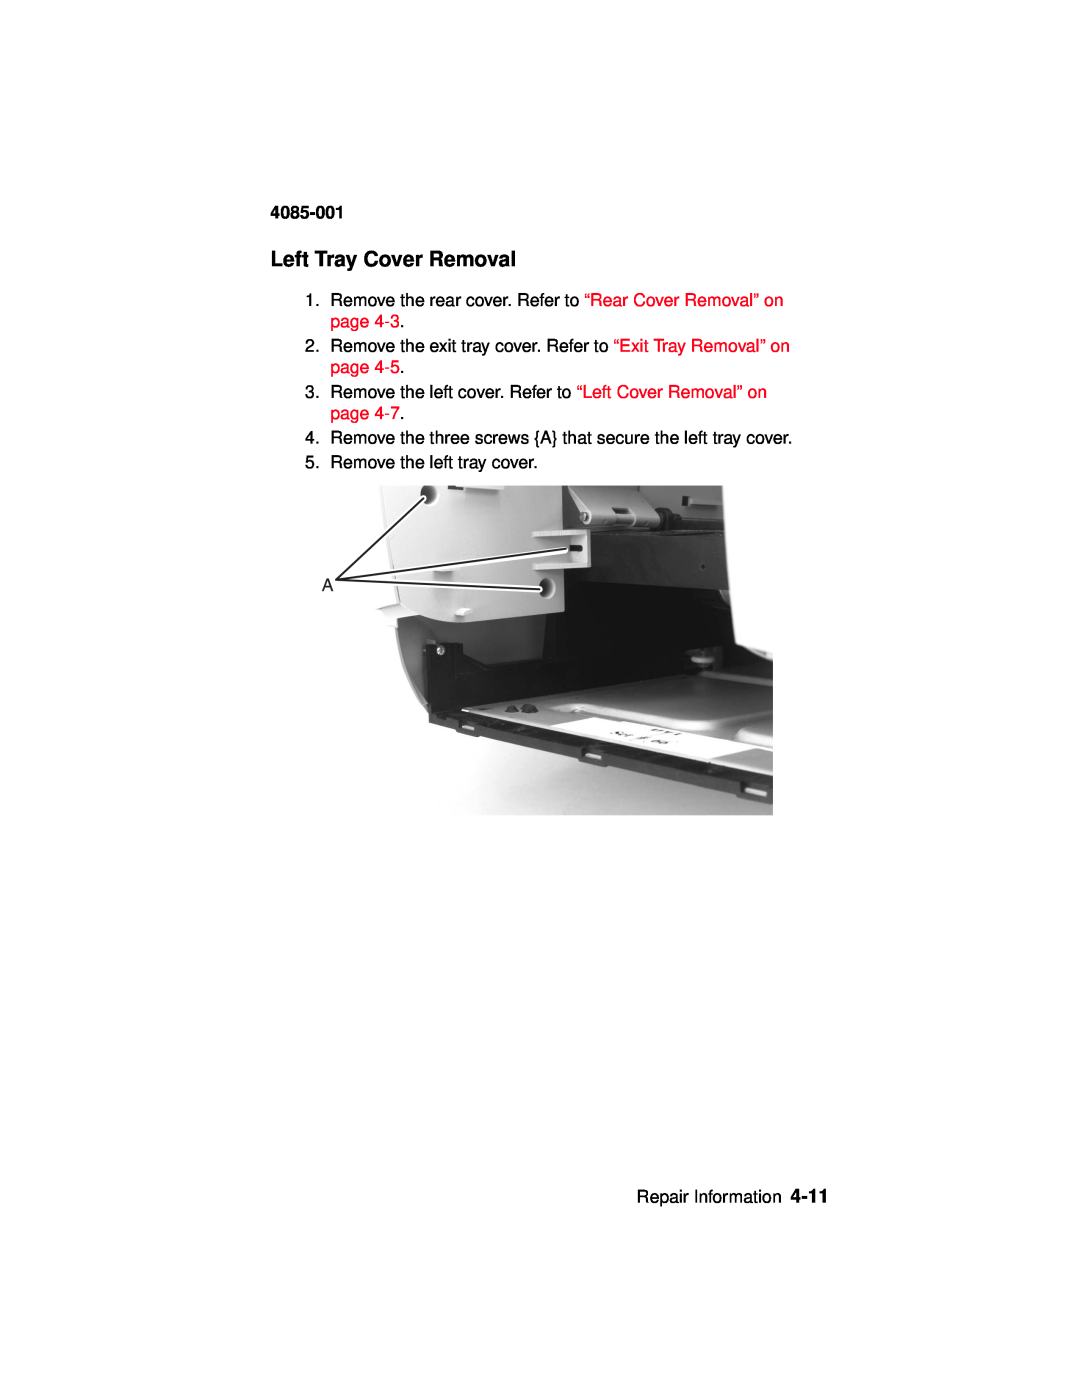 Lexmark Printer, J110 manual Left Tray Cover Removal, 4085-001 